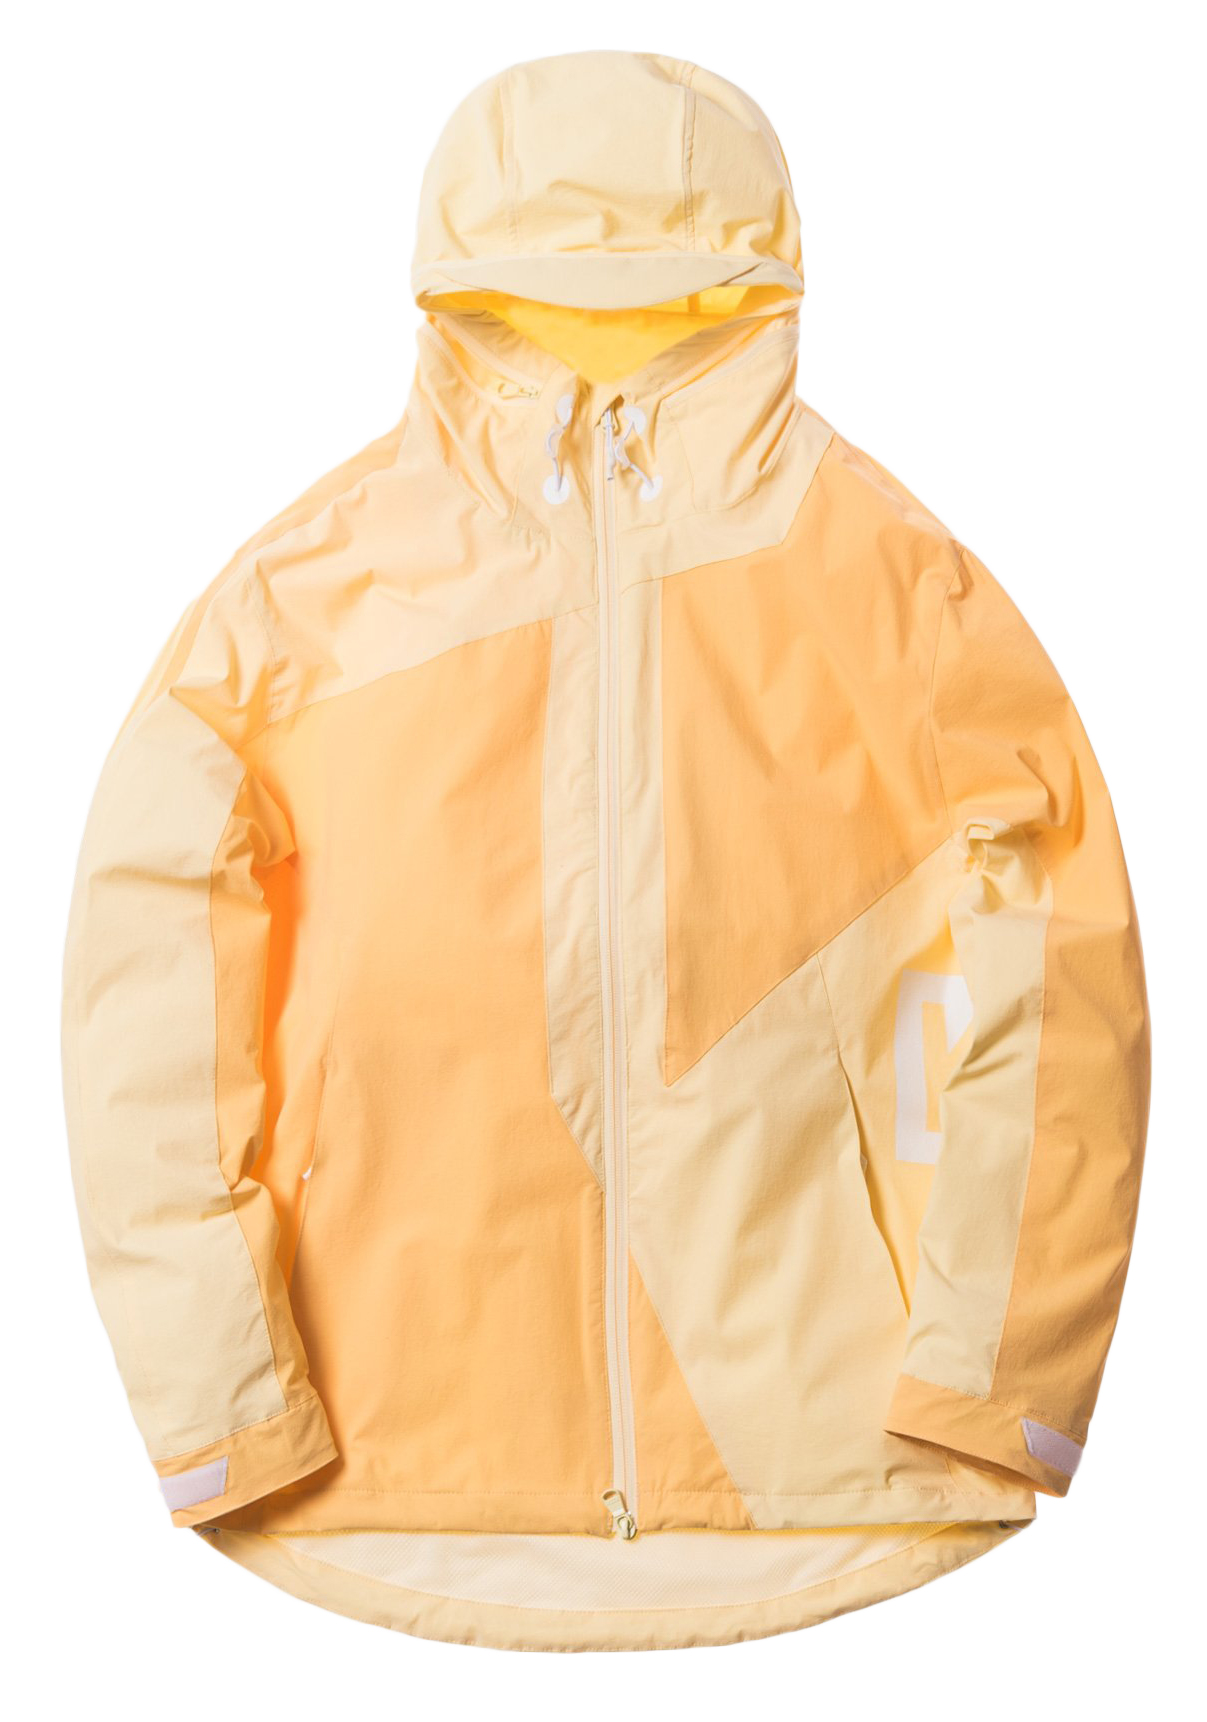 Kith Madison Jacket Yellow/Pale Yellow - SS18 - US